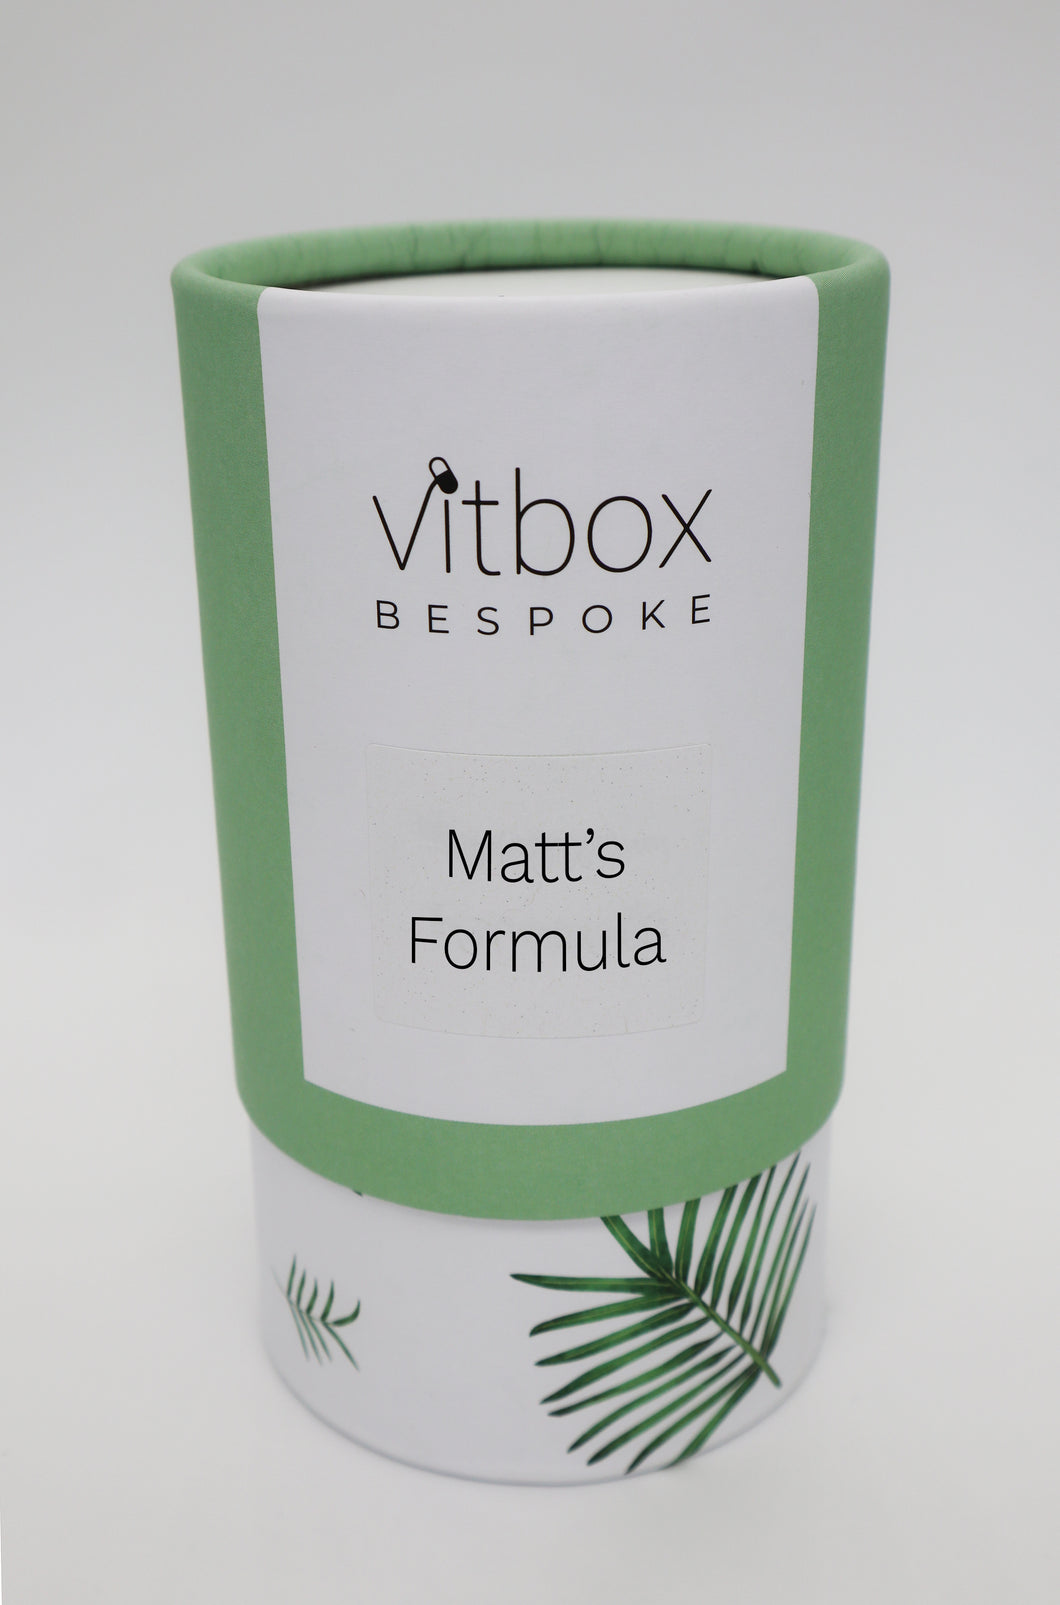 Matt's Vitbox Bespoke 25/07/2020